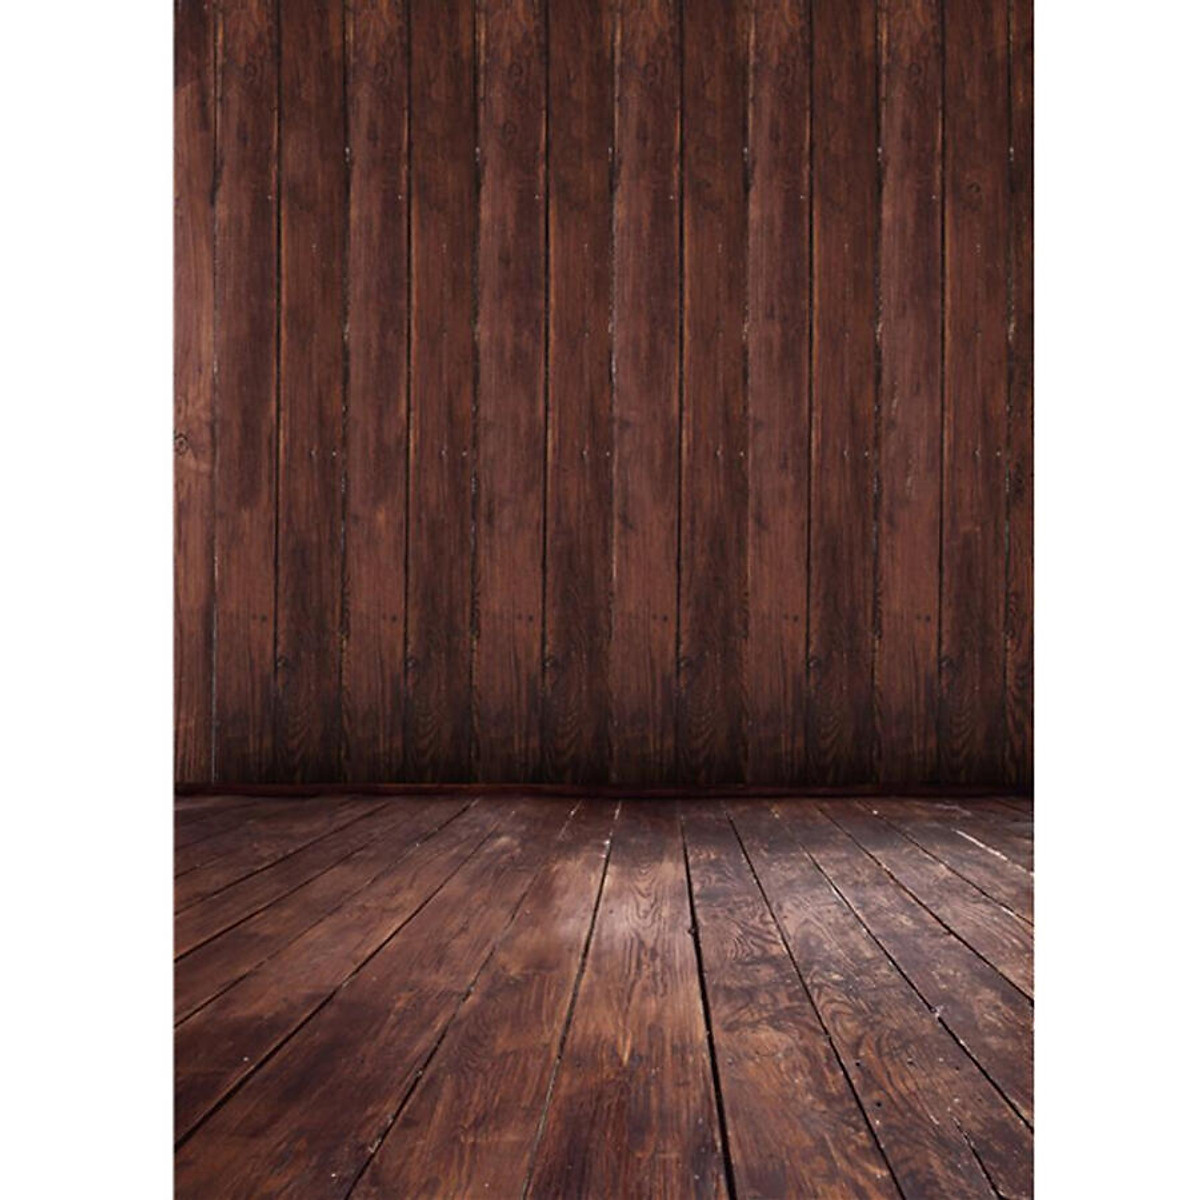 Nền ảnh gỗ nâu thô - Màu sắc đặc trưng của nền ảnh gỗ nâu thô mang lại cho bạn một vẻ đẹp sâu sắc và sang trọng. Cùng với sự kết hợp hài hòa của ánh sáng và bóng tối, nền ảnh gỗ nâu thô sẽ tạo nên những bức ảnh đẹp và nổi bật.